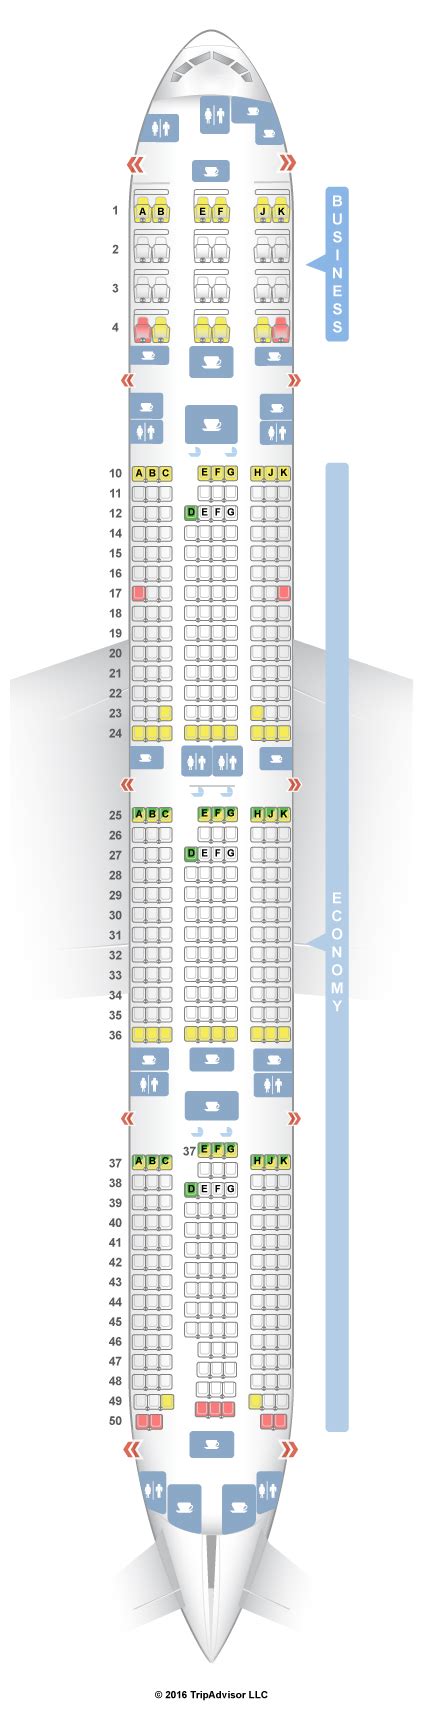 Seatguru Seat Map Qatar Airways Boeing 777 300er 77w V2 Seatguru